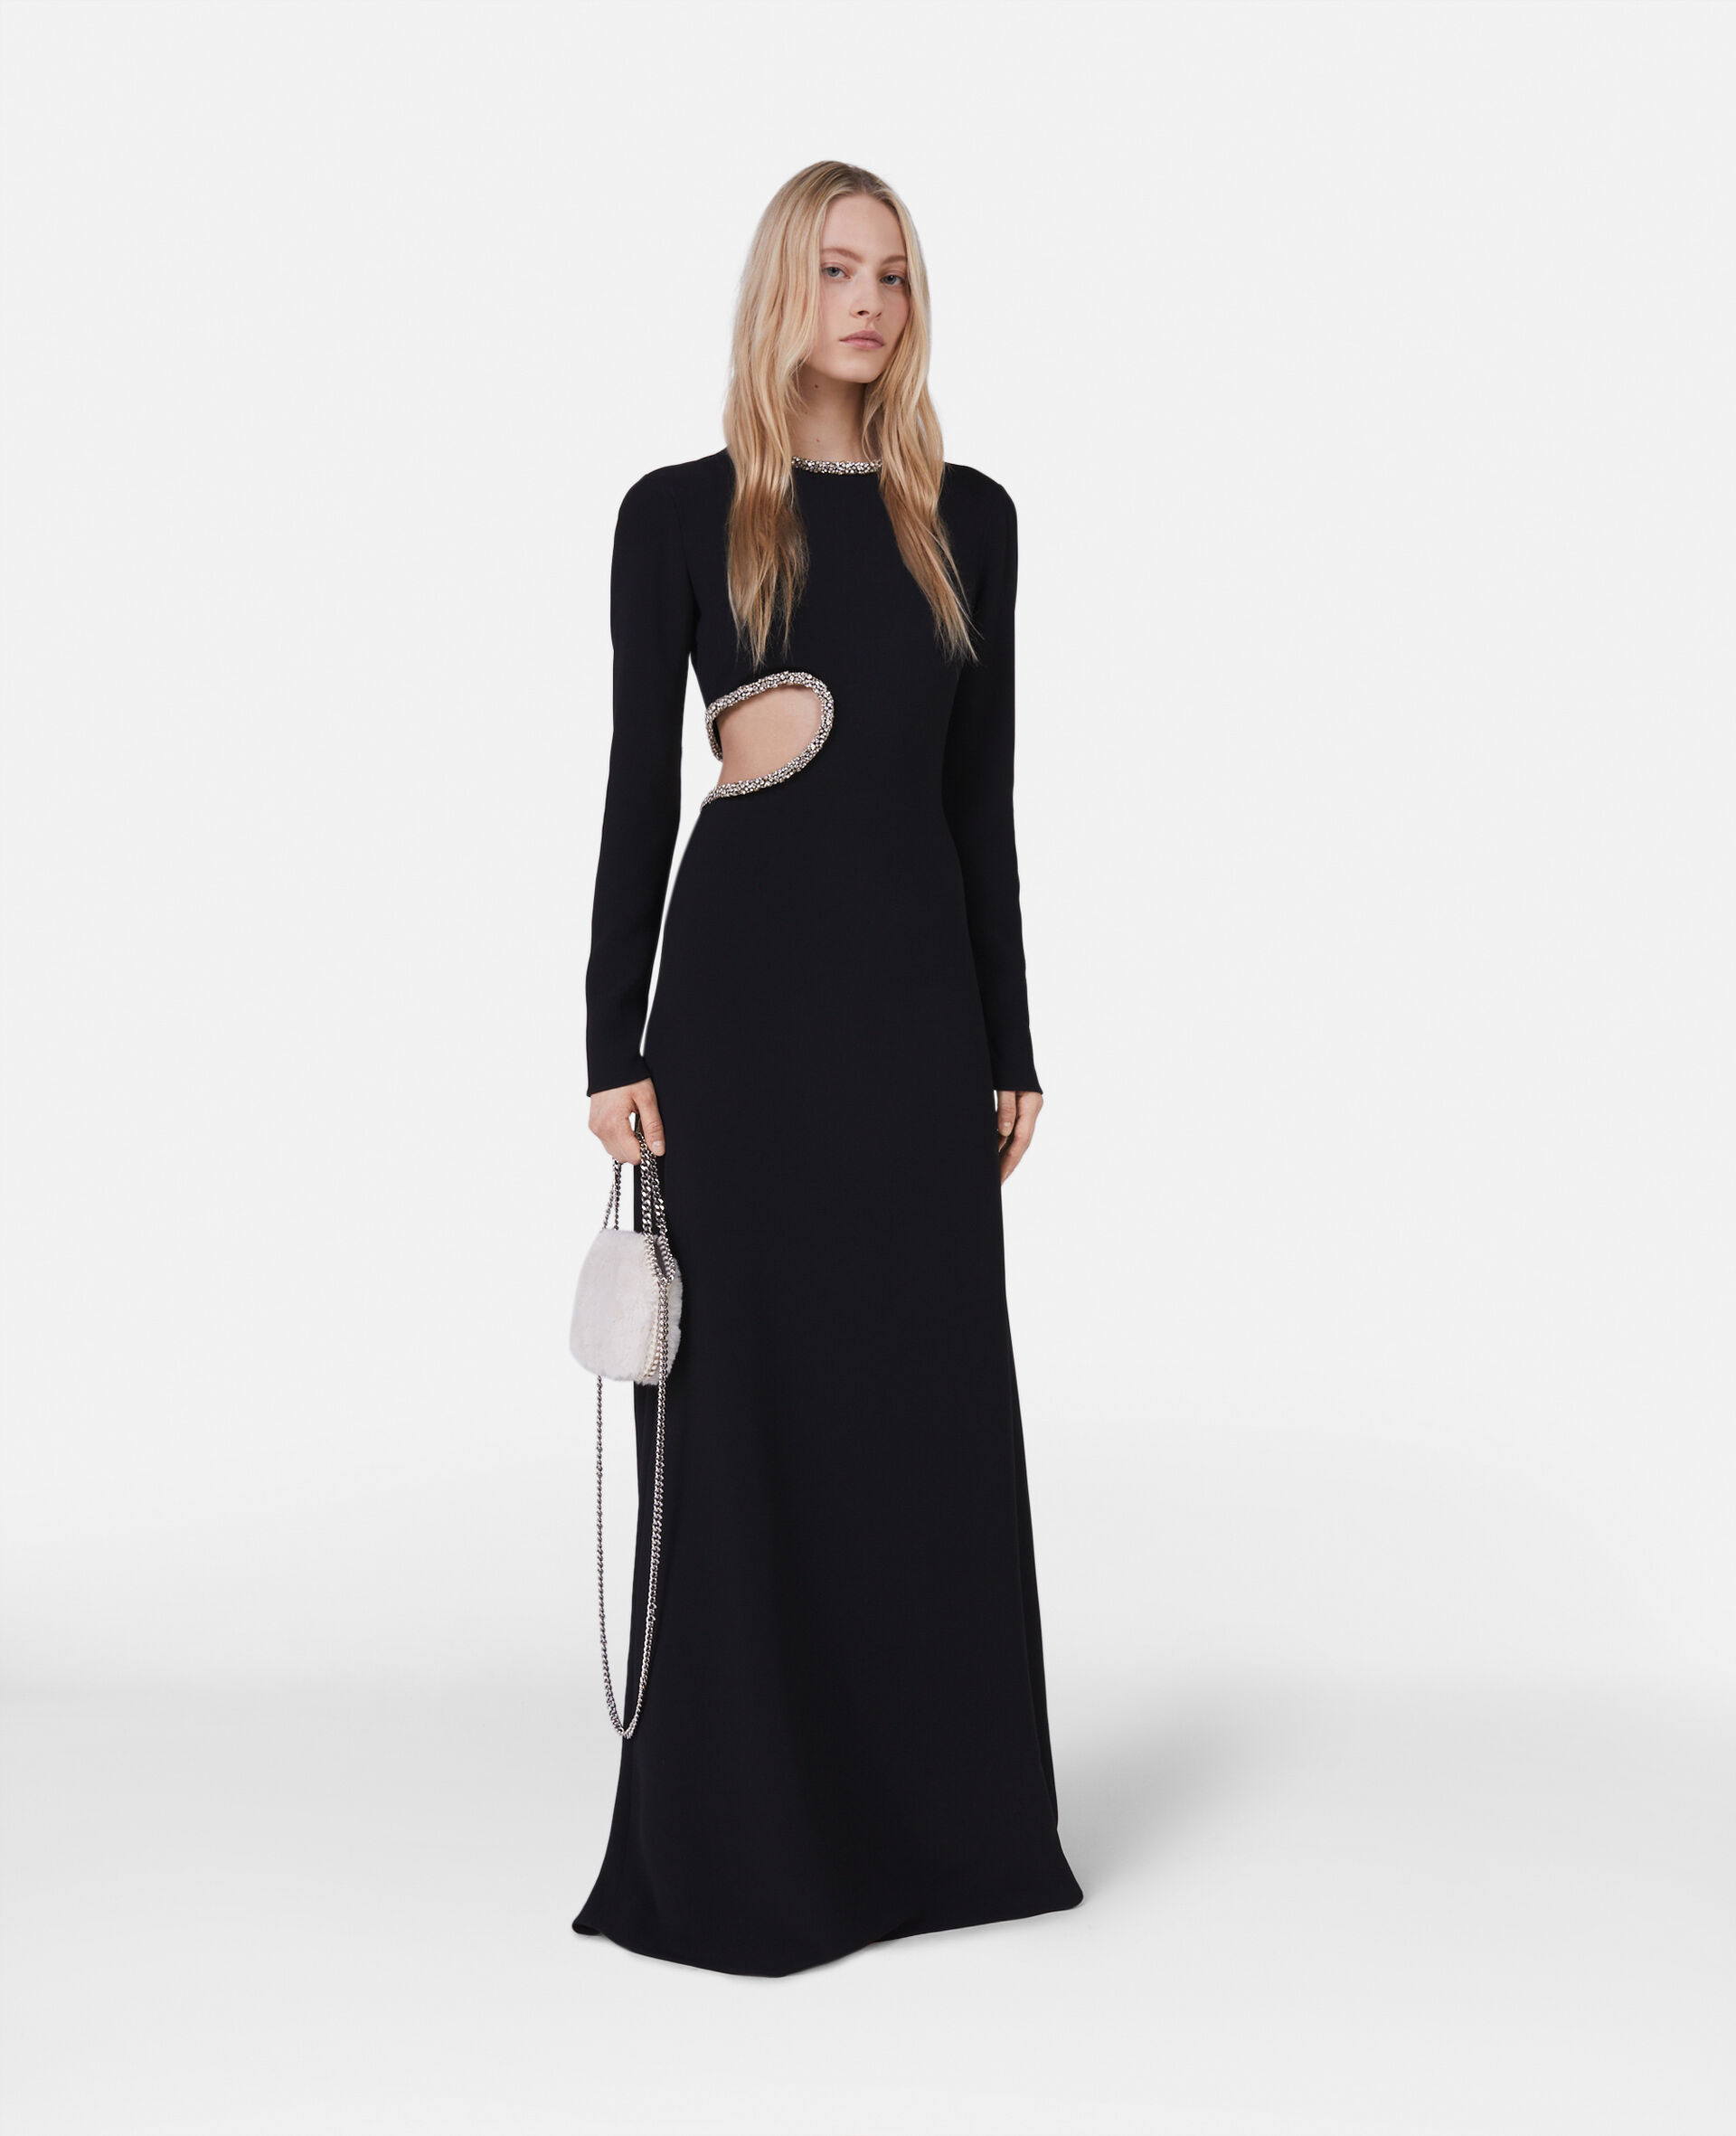 クリスタル カットアウト イブニングドレス-ブラック-model